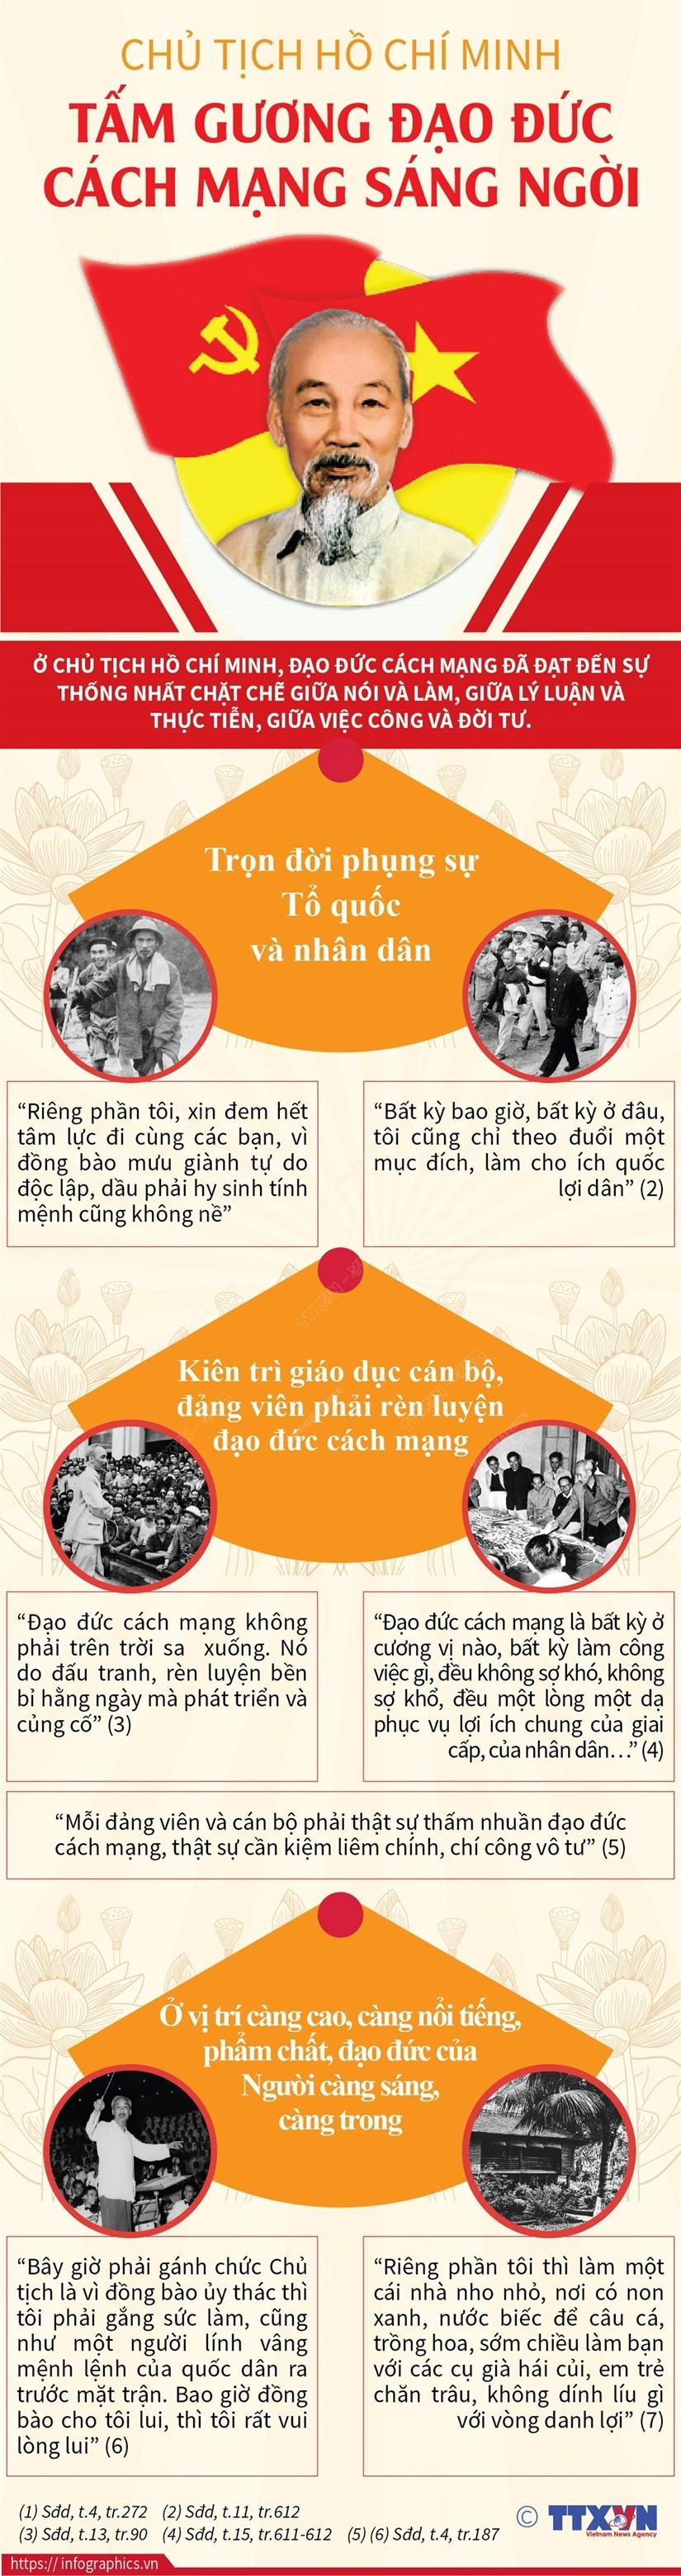 Chu tich Ho Chi Minh: Tam guong dao duc cach mang sang ngoi hinh anh 1